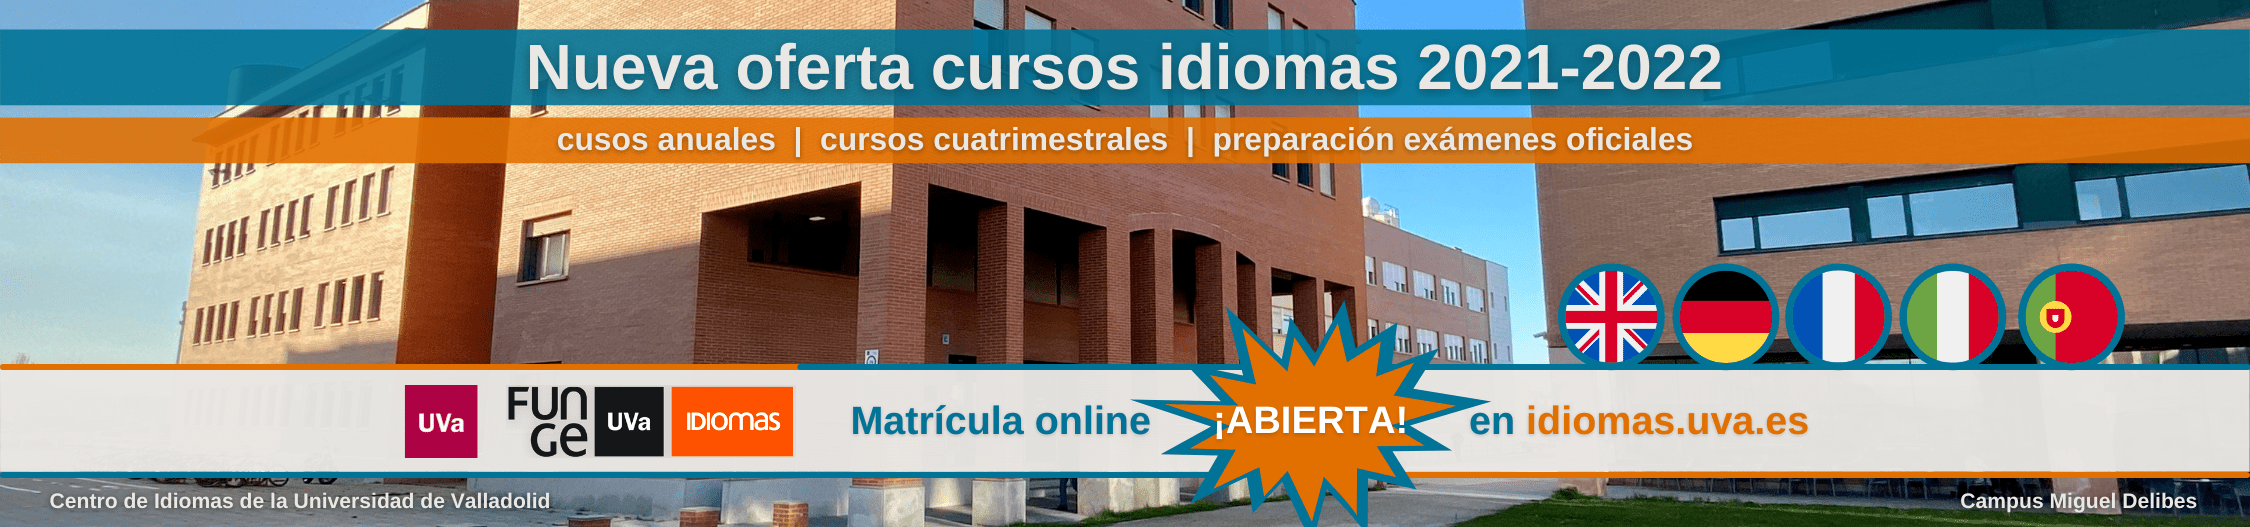 Cursos de idiomas 2021 2022 Universidad de Valladolid banner comprimido